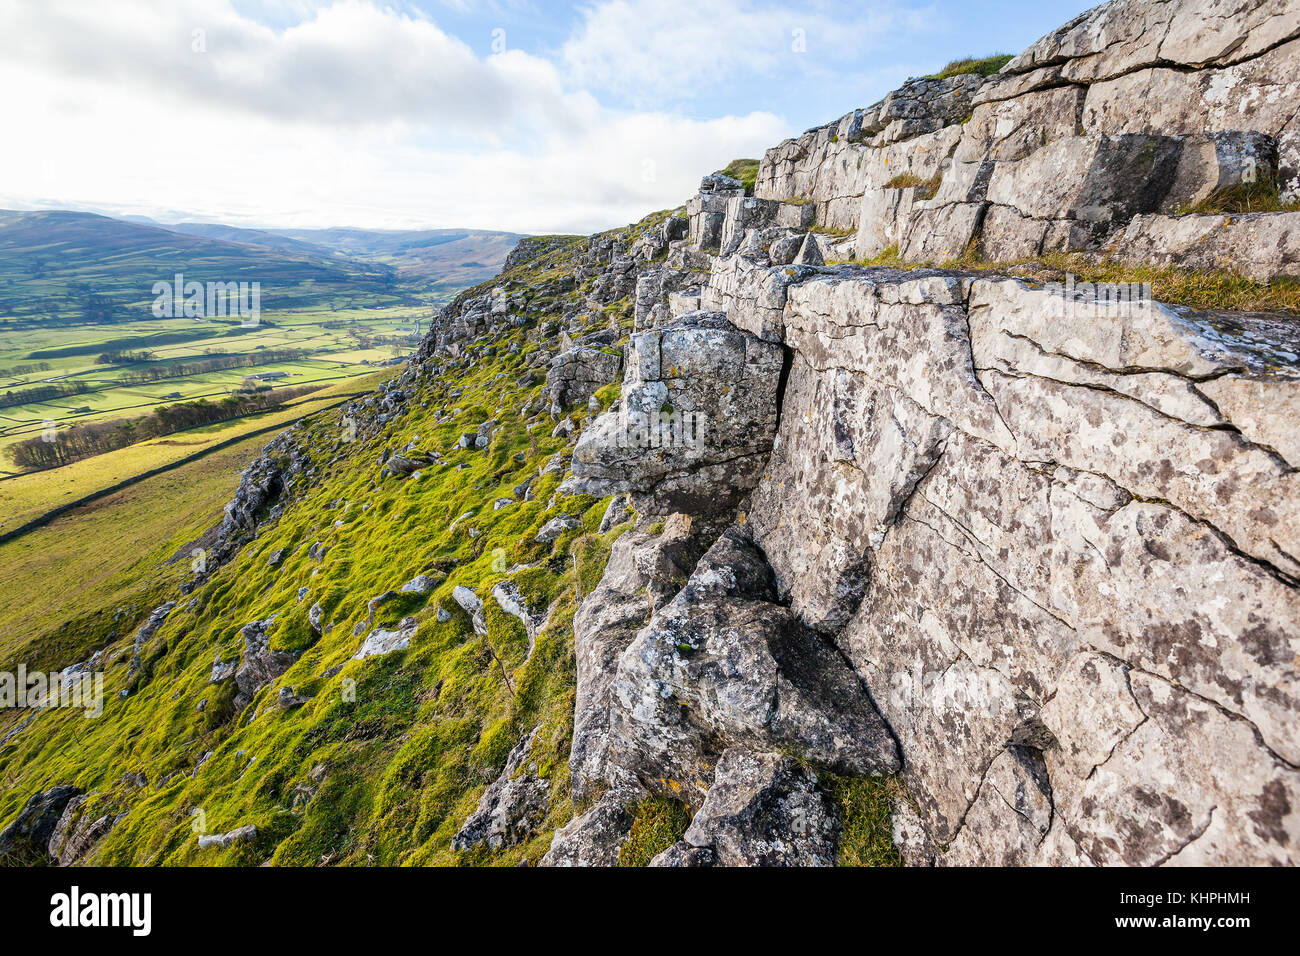 Felsige Klippe mit Verwittertem Kalkstein auf Hirsche fielen in den Yorkshire Dales, England. Tal der wensleydale im Hintergrund gesehen werden kann. Stockfoto